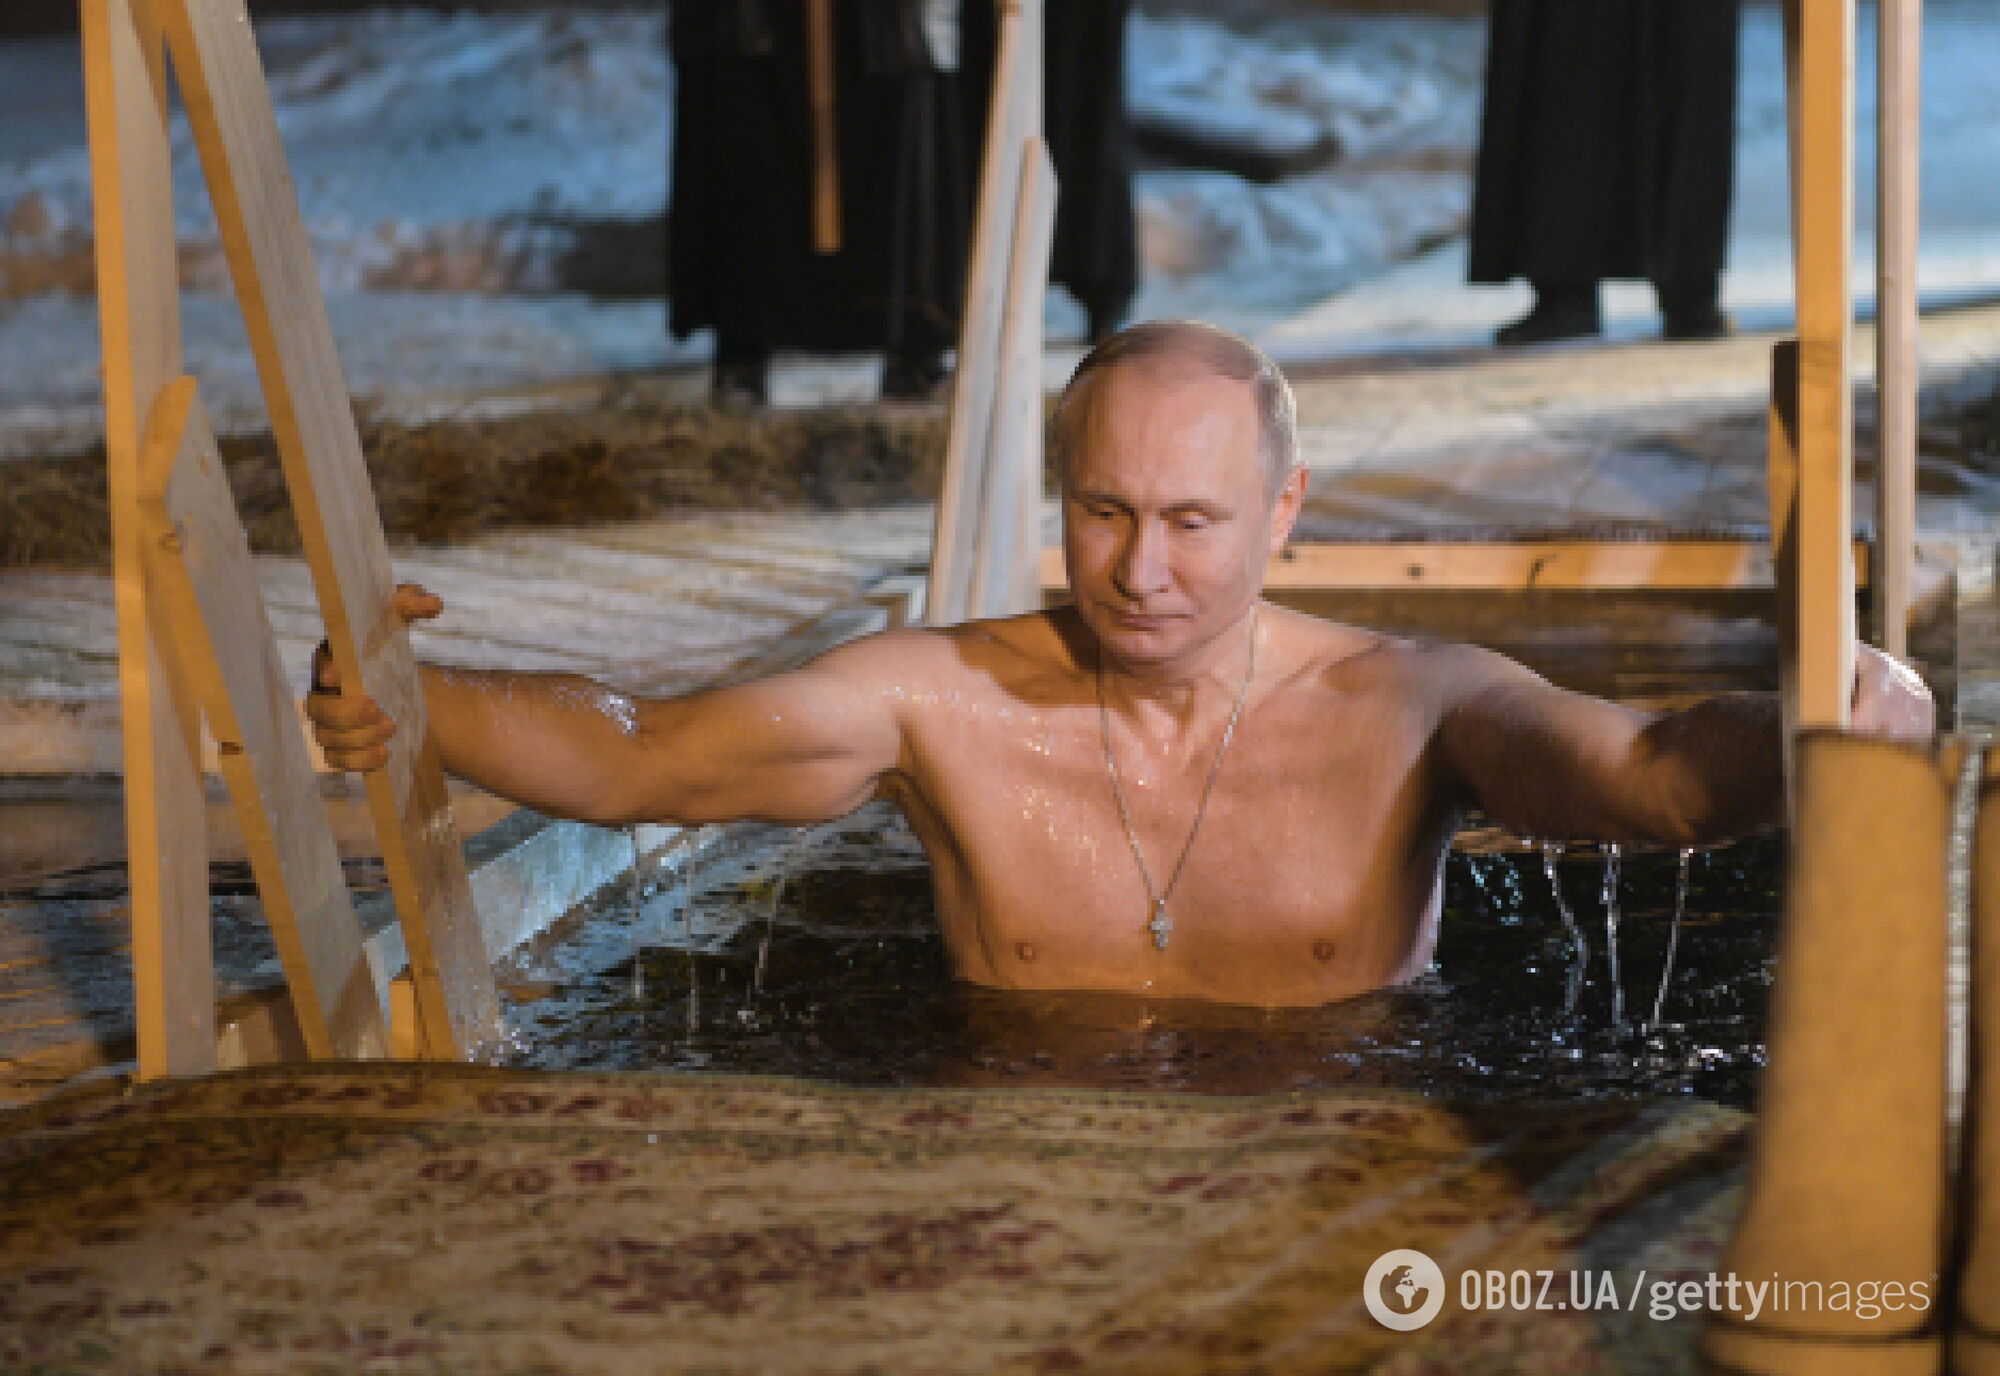 "Новое дно искал": Путин взбесил россиян крещенскими купаниями